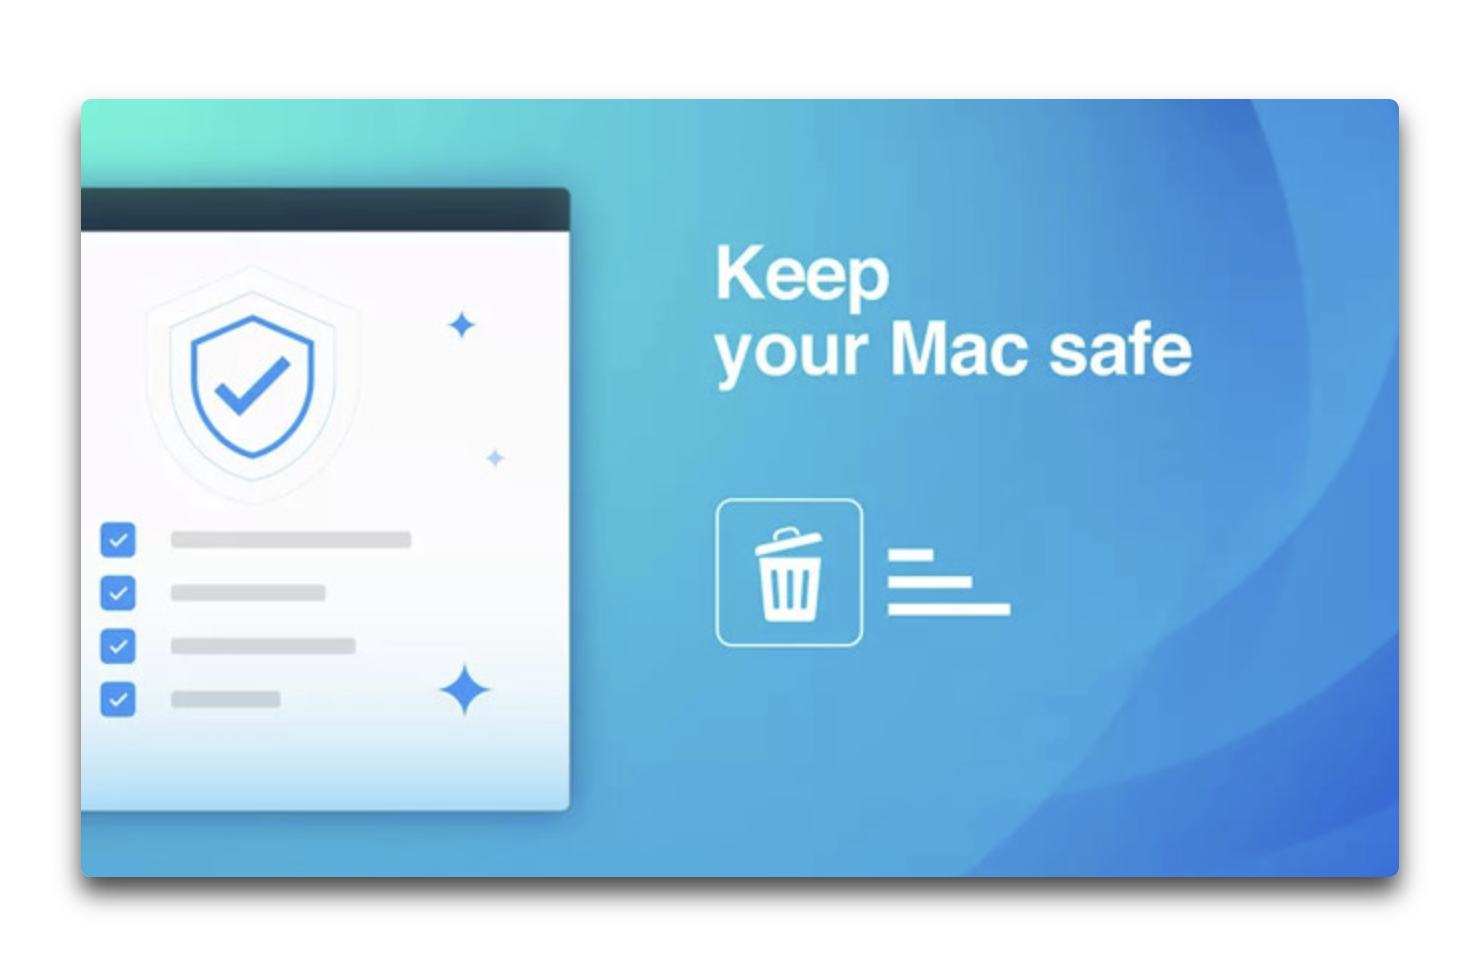 Mac App Storeで、ユーザデータを盗む悪意のあるアプリが増加